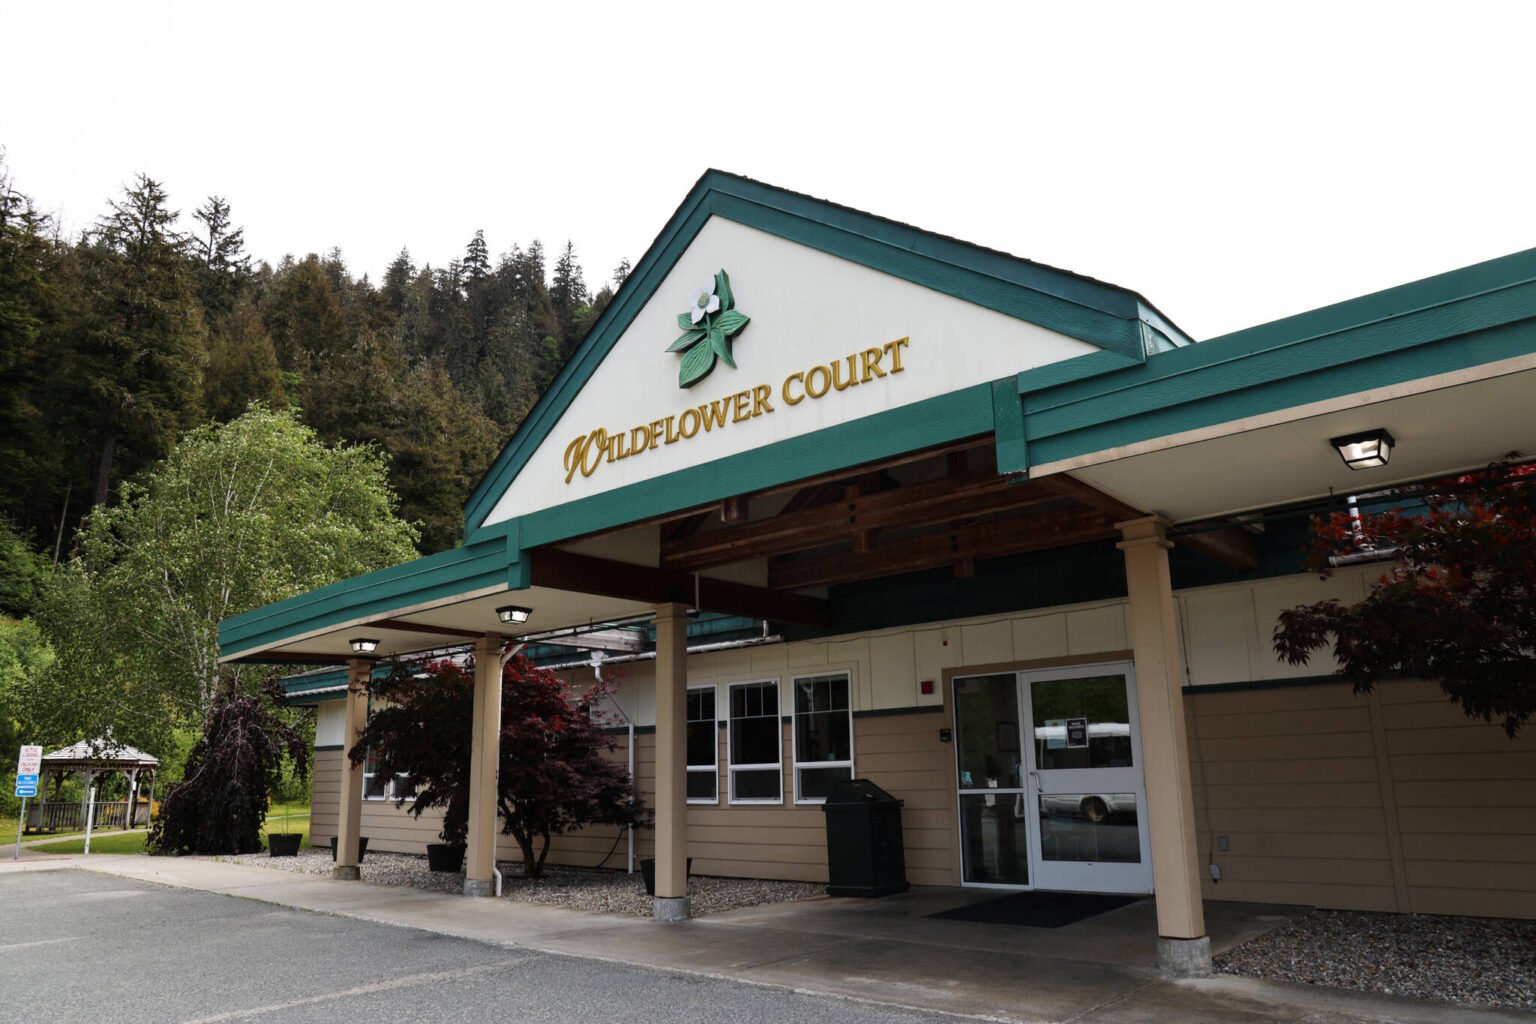 Bartlett Regional Hospital officially absorbs Wildflower Court Juneau